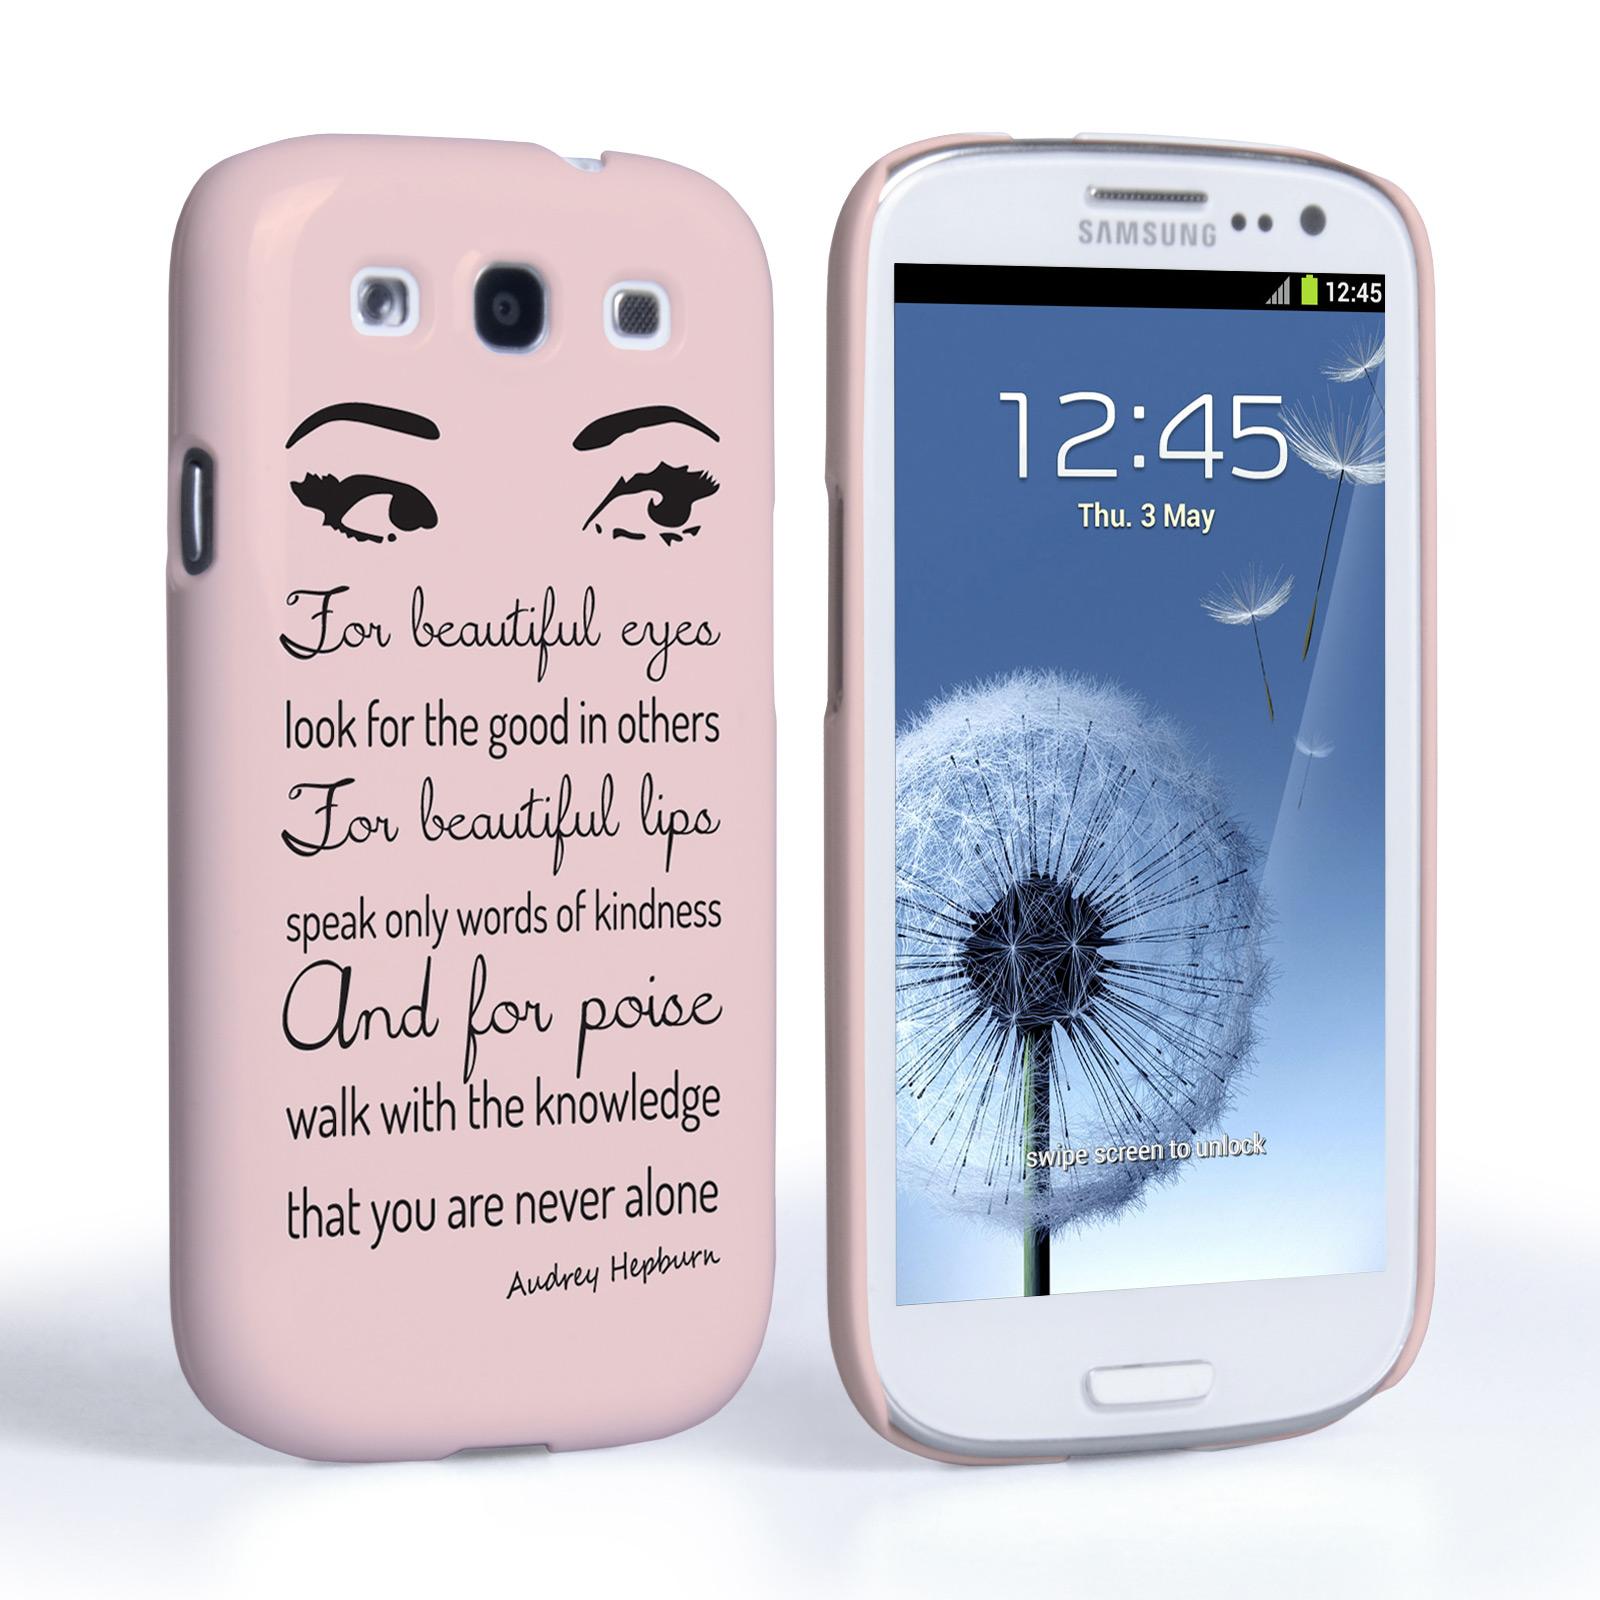 Caseflex Samsung Galaxy S3 Audrey Hepburn ‘Eyes’ Quote Case